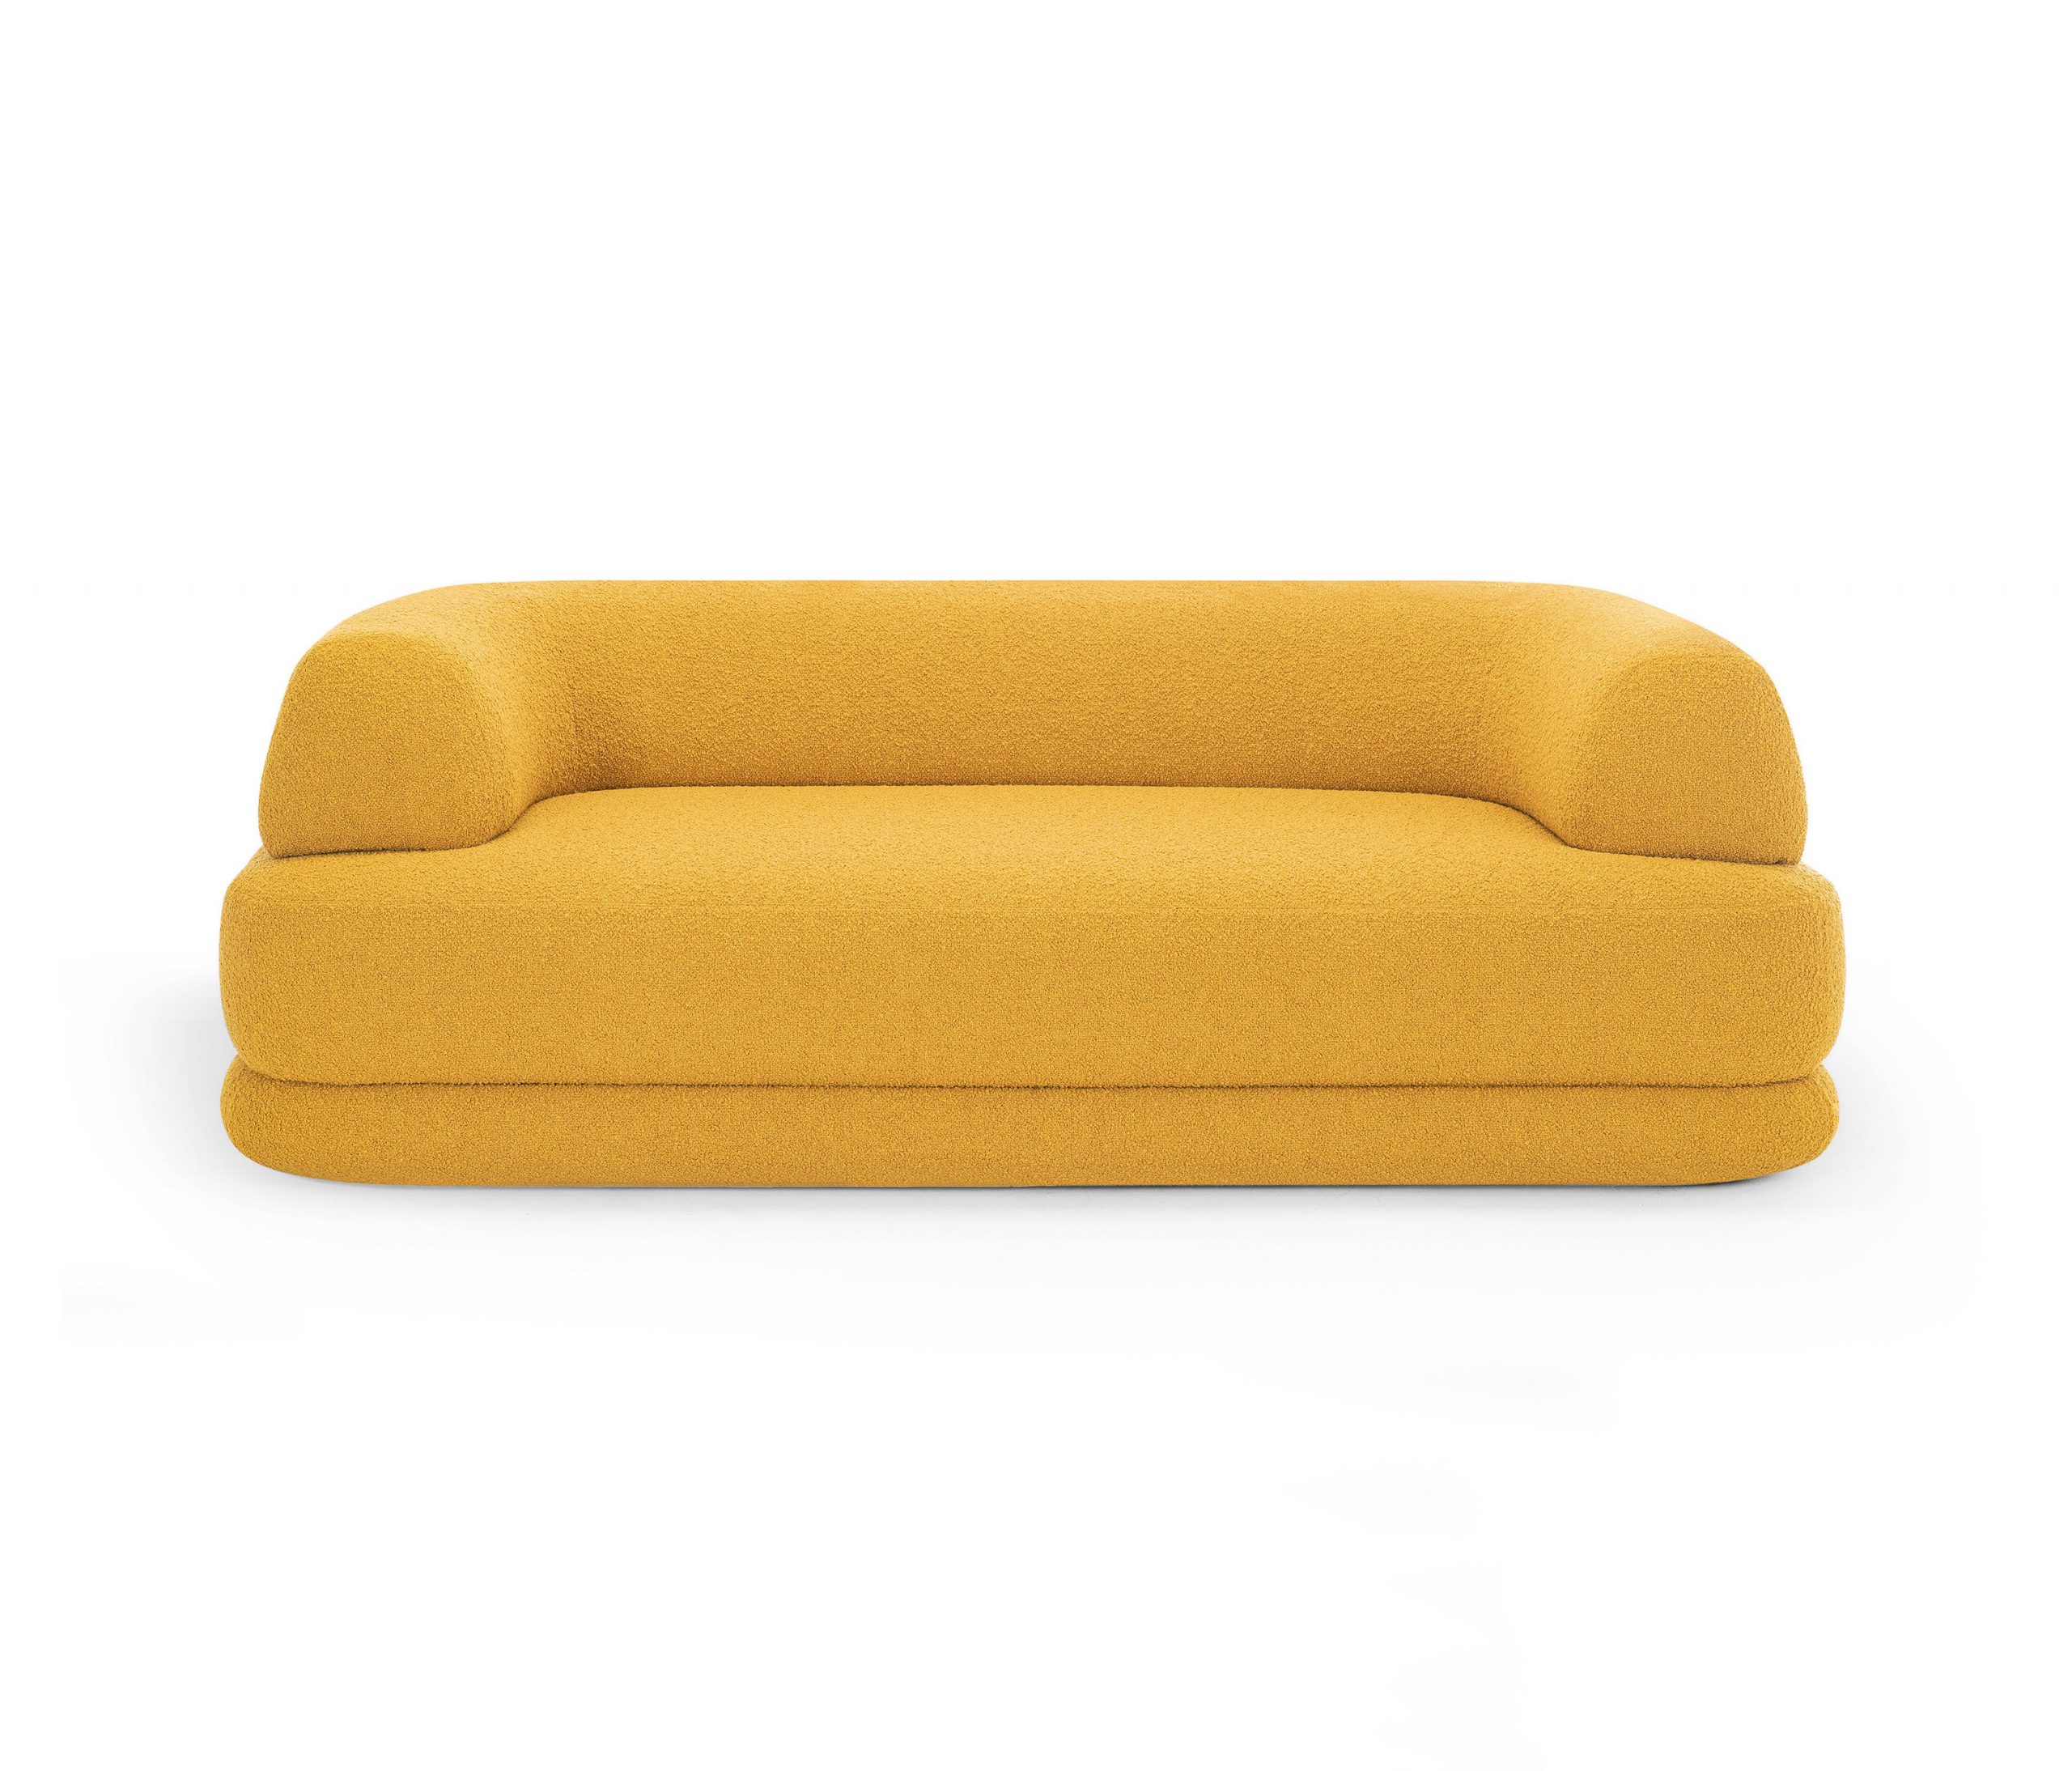 Bumper Sofa Collection by Calvi Brambilla for Zanotta